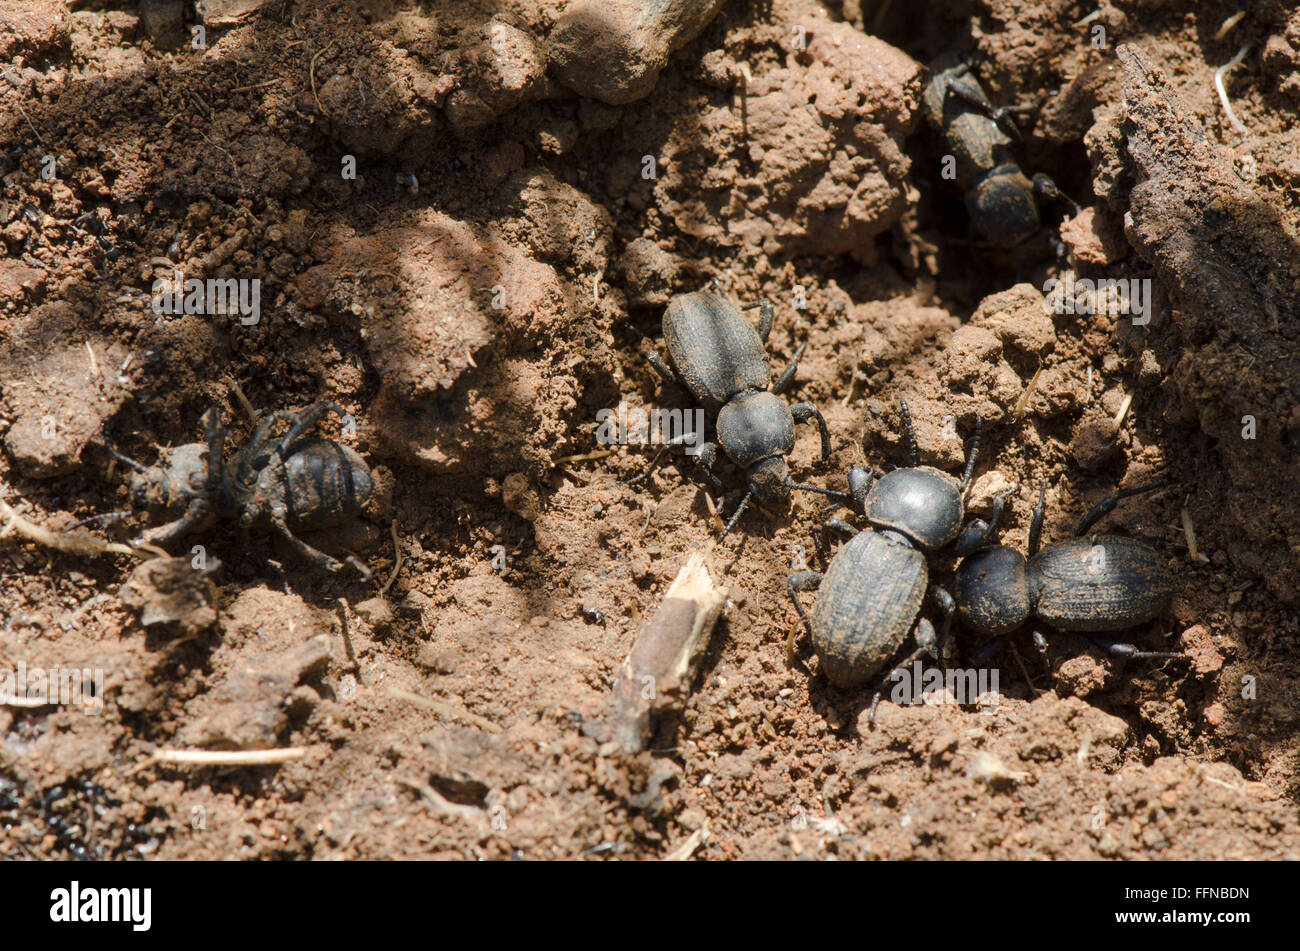 Les bousiers non identifiés de creuser dans le sable, de l'Espagne. Banque D'Images